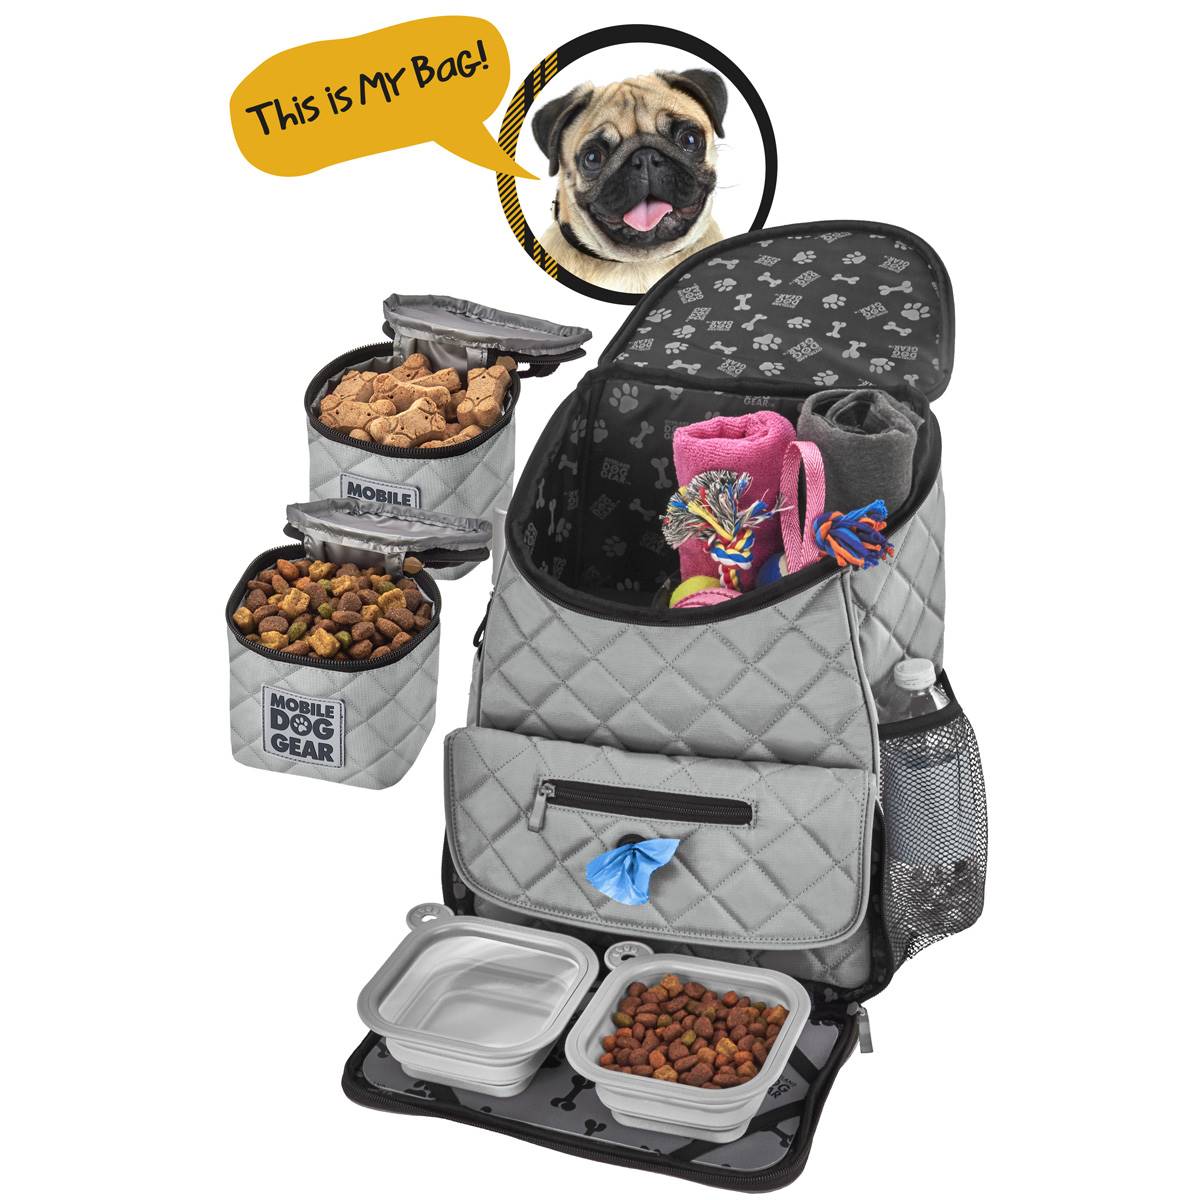 Mobile Dog Gear Weekender Backpack Set